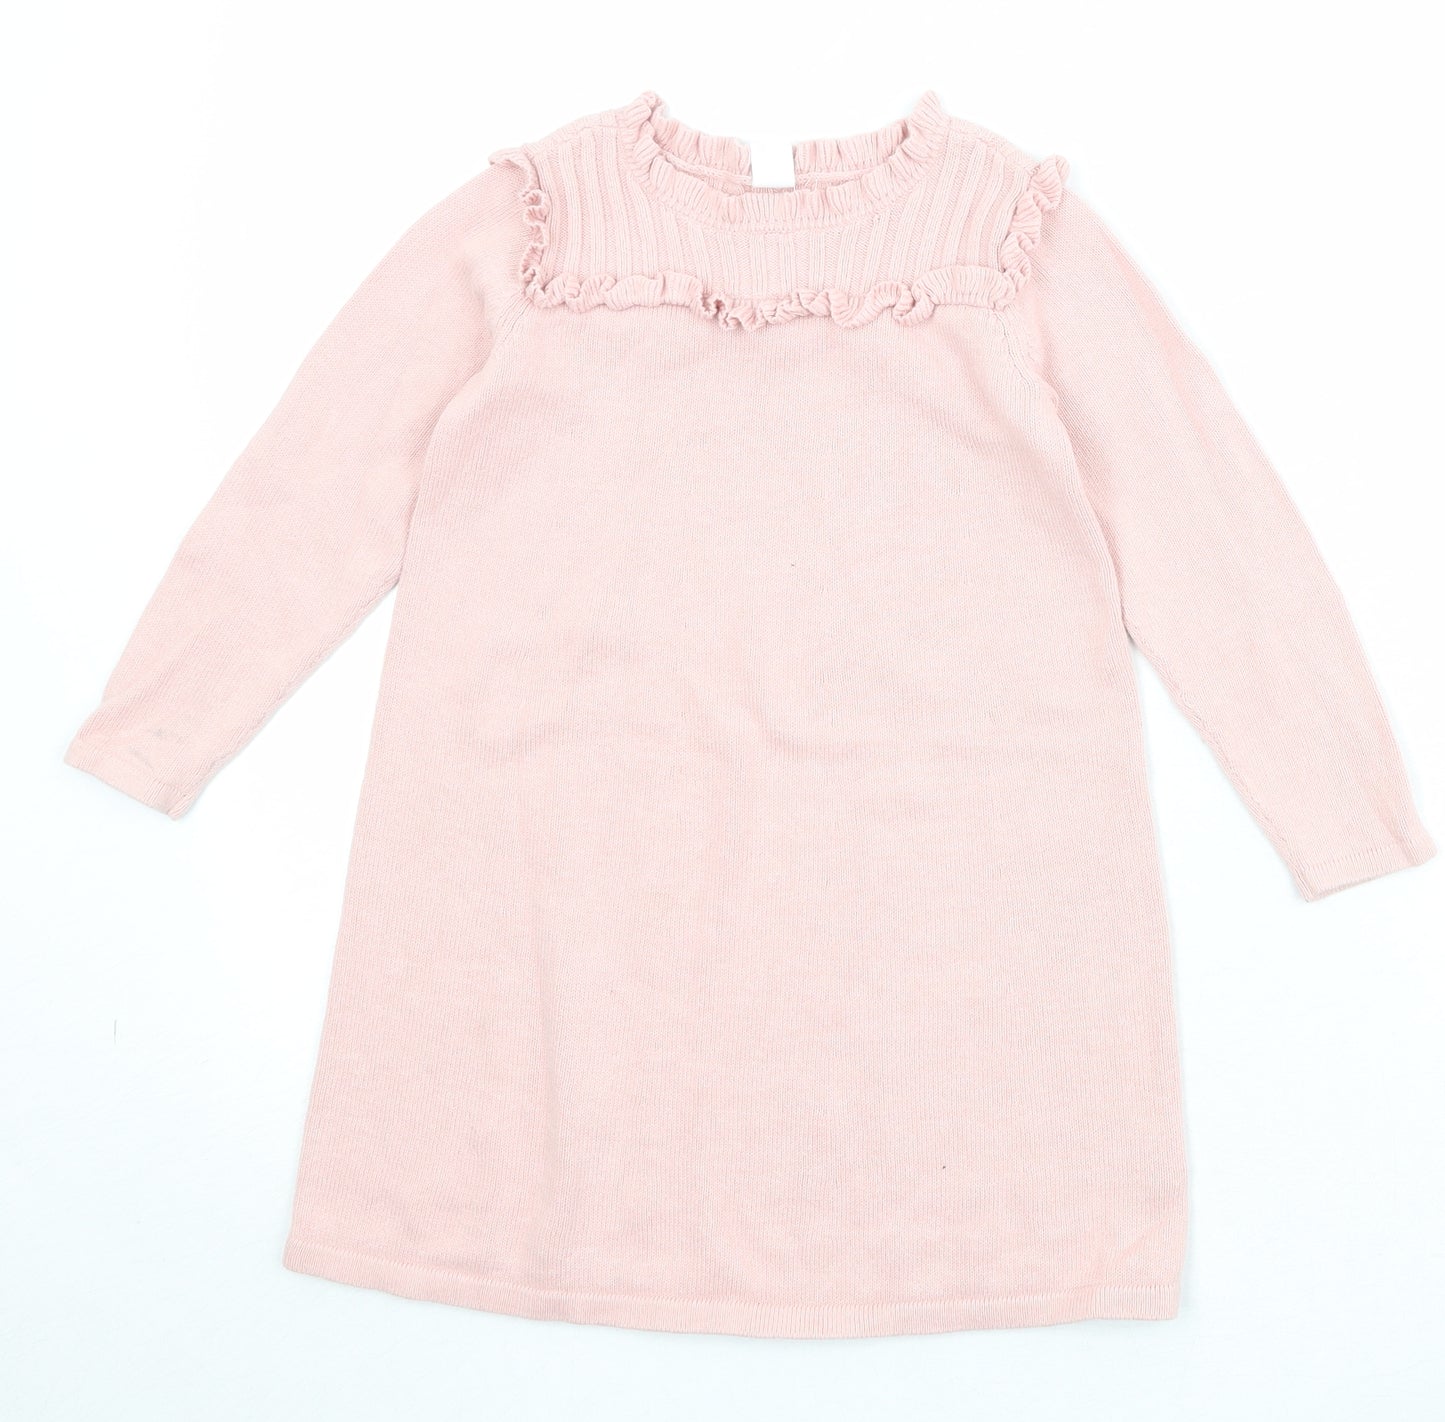 Gap Girls Pink 100% Cotton Jumper Dress Size 5 Years Round Neck Pullover